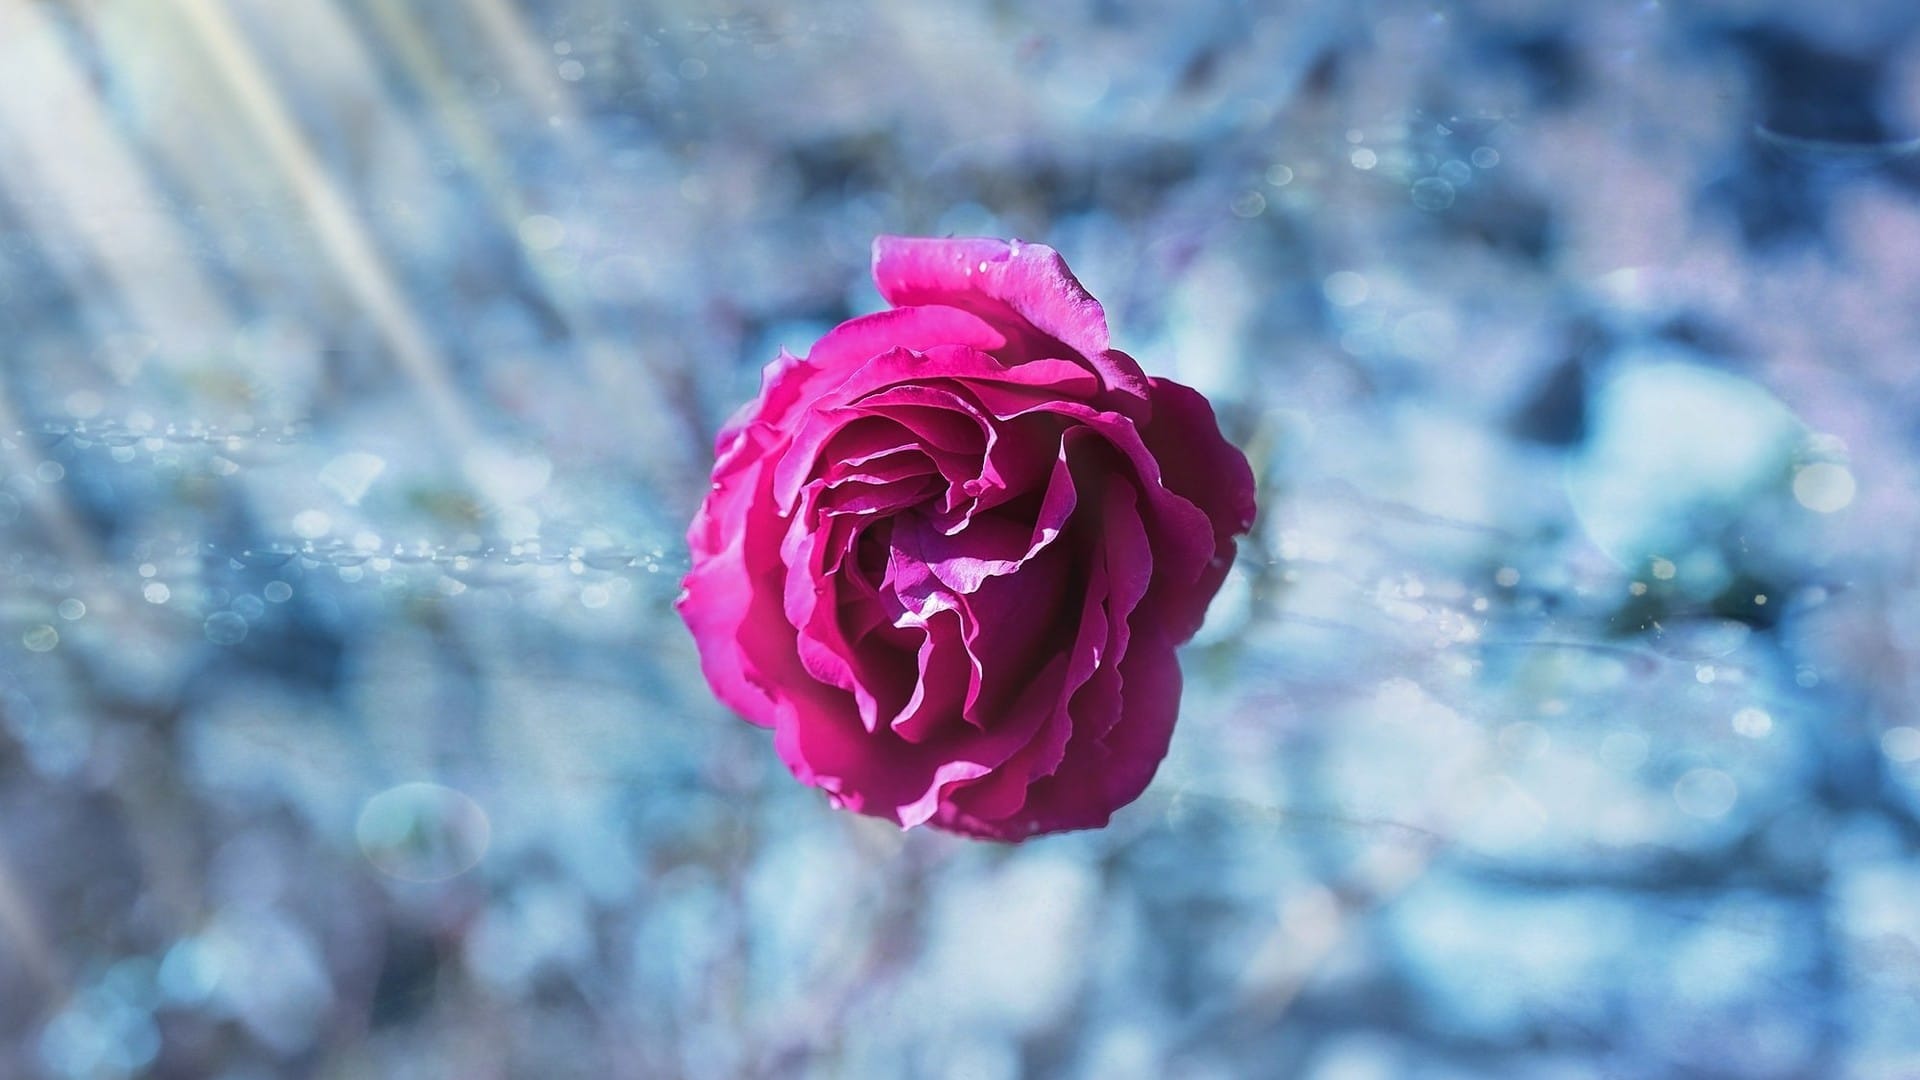 玫瑰 花 水滴 - Pixabay上的免费照片 - Pixabay